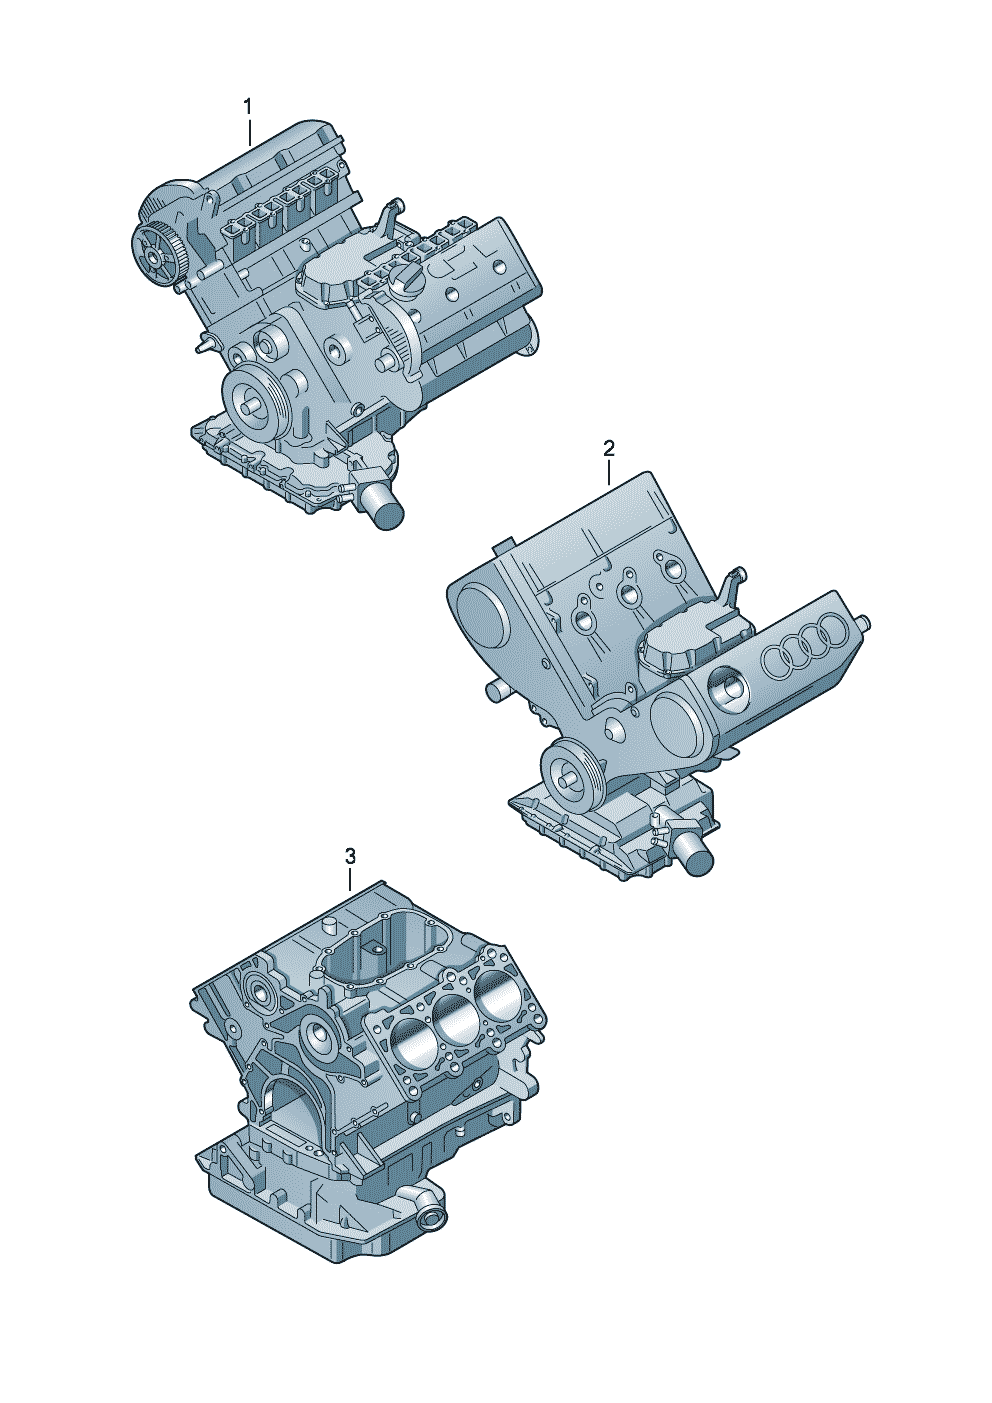 Base engine 3.0Ltr. - Audi Q5/Sportback - aq5